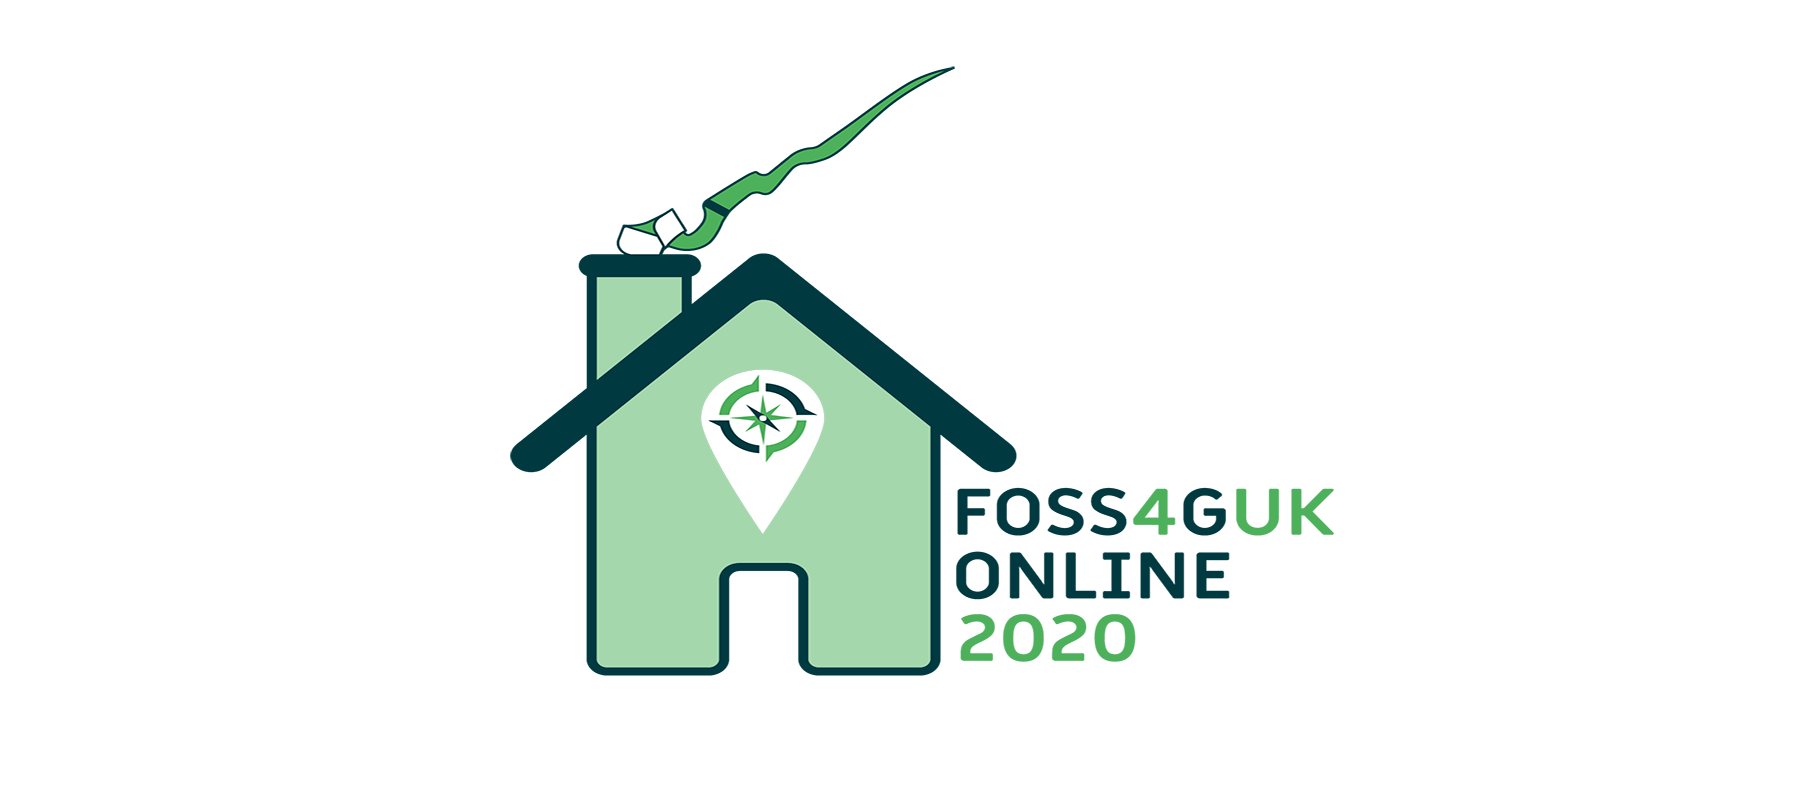 FOSS4G UK Online 2020